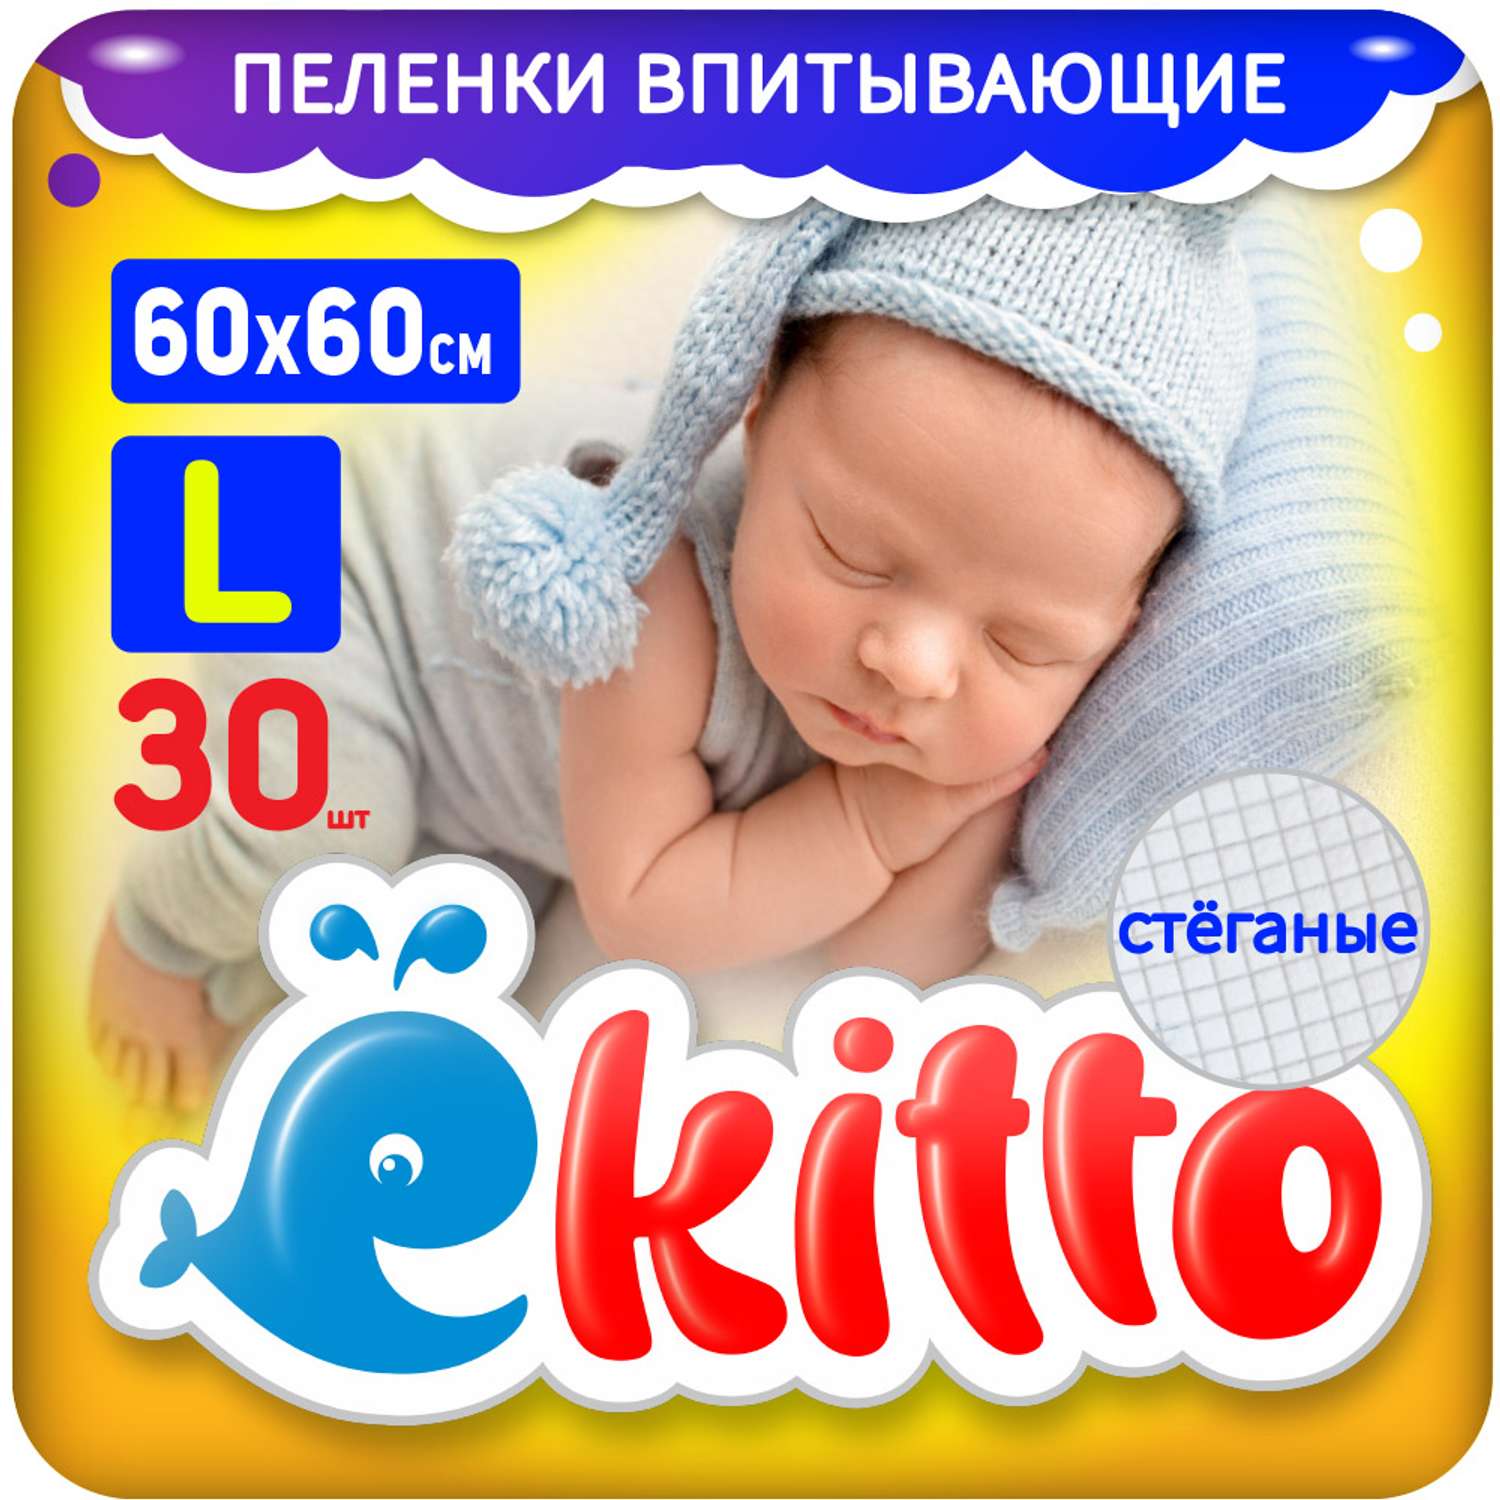 Пеленки одноразовые Ekitto для новорожденных впитывающие 60х60 30шт - фото 1